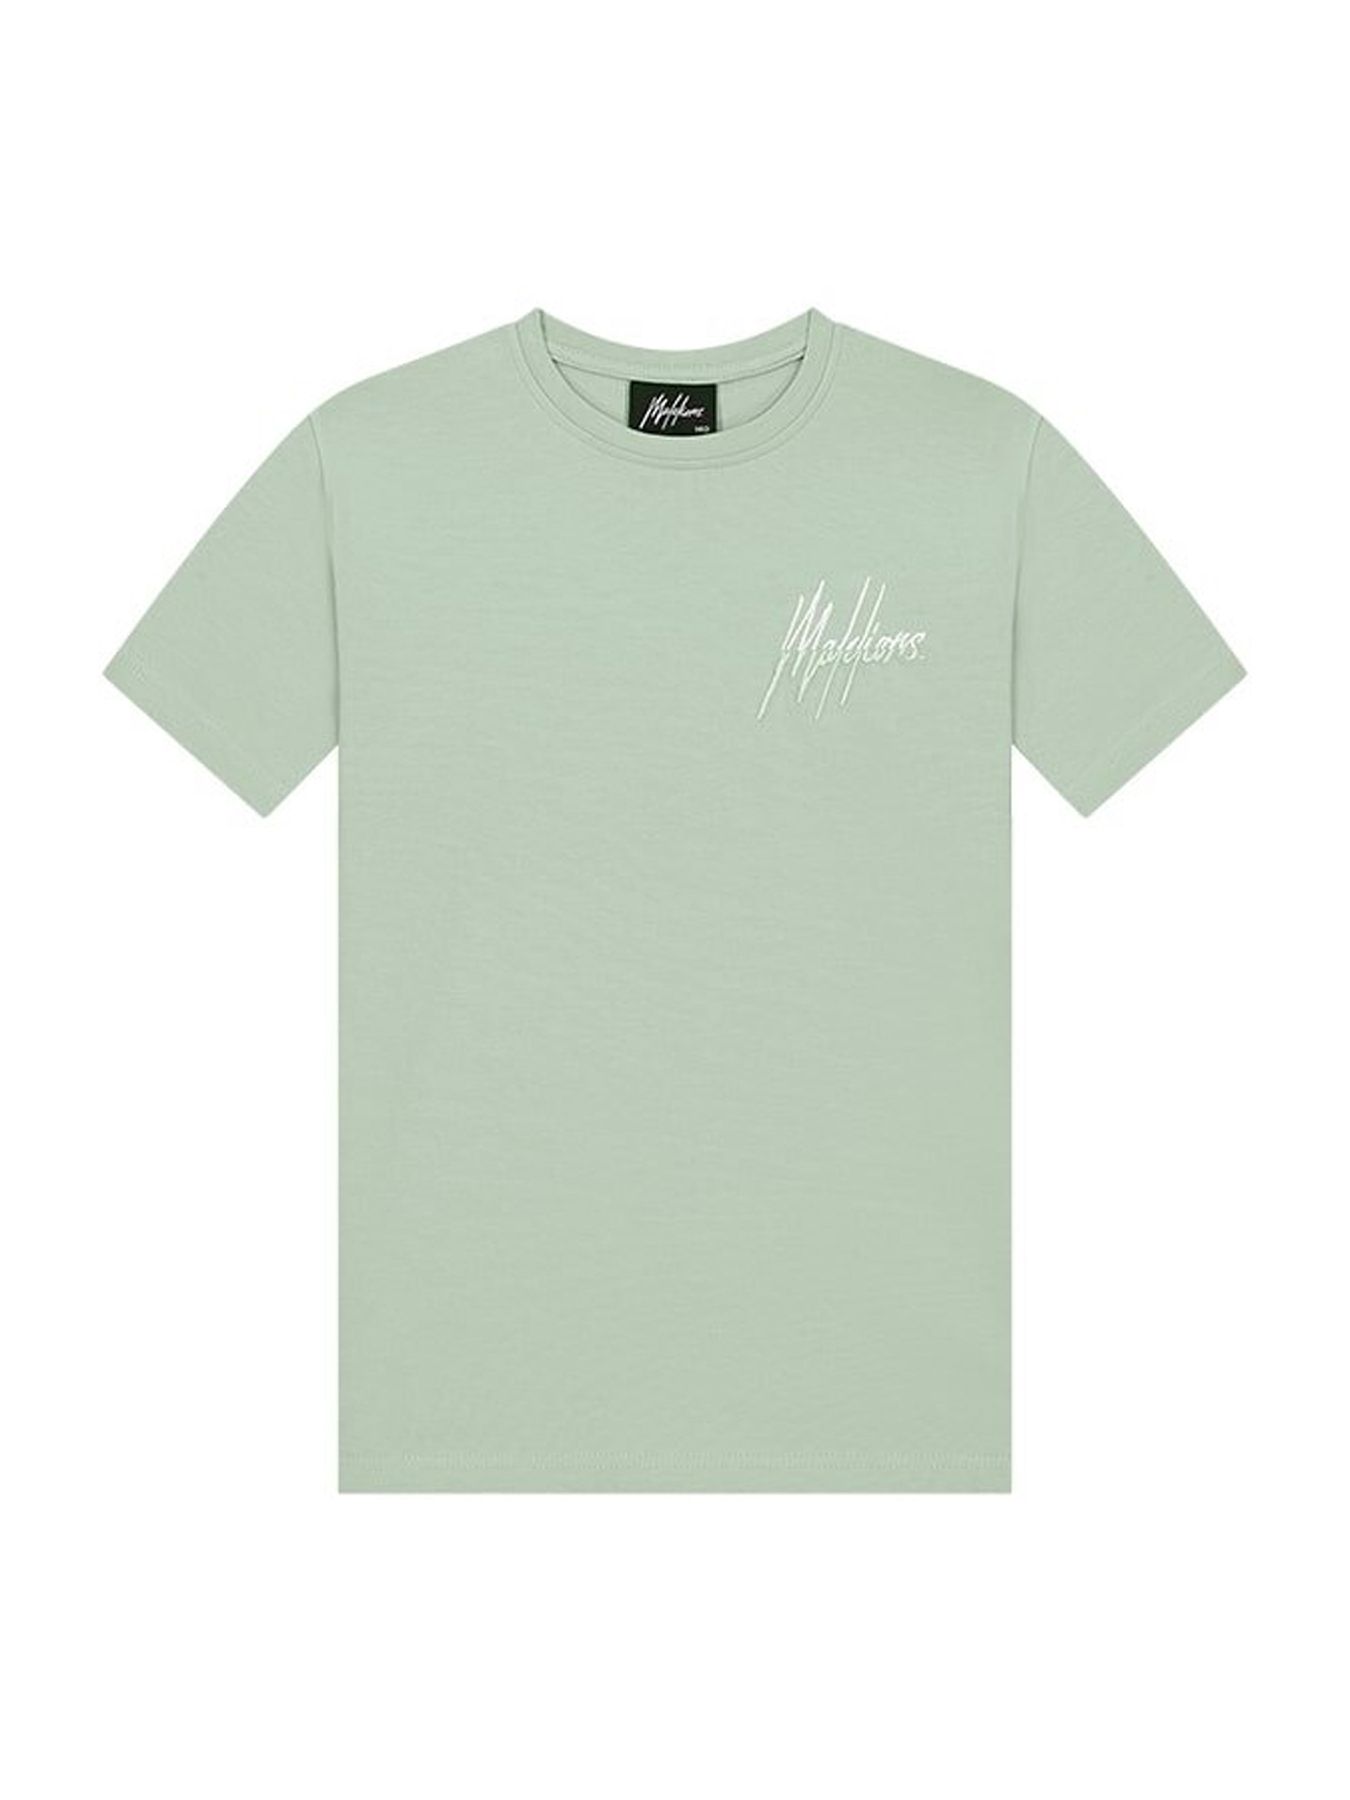 Malelions Mj1-ss24-07 T-shirt kids Mint 00107258-G4